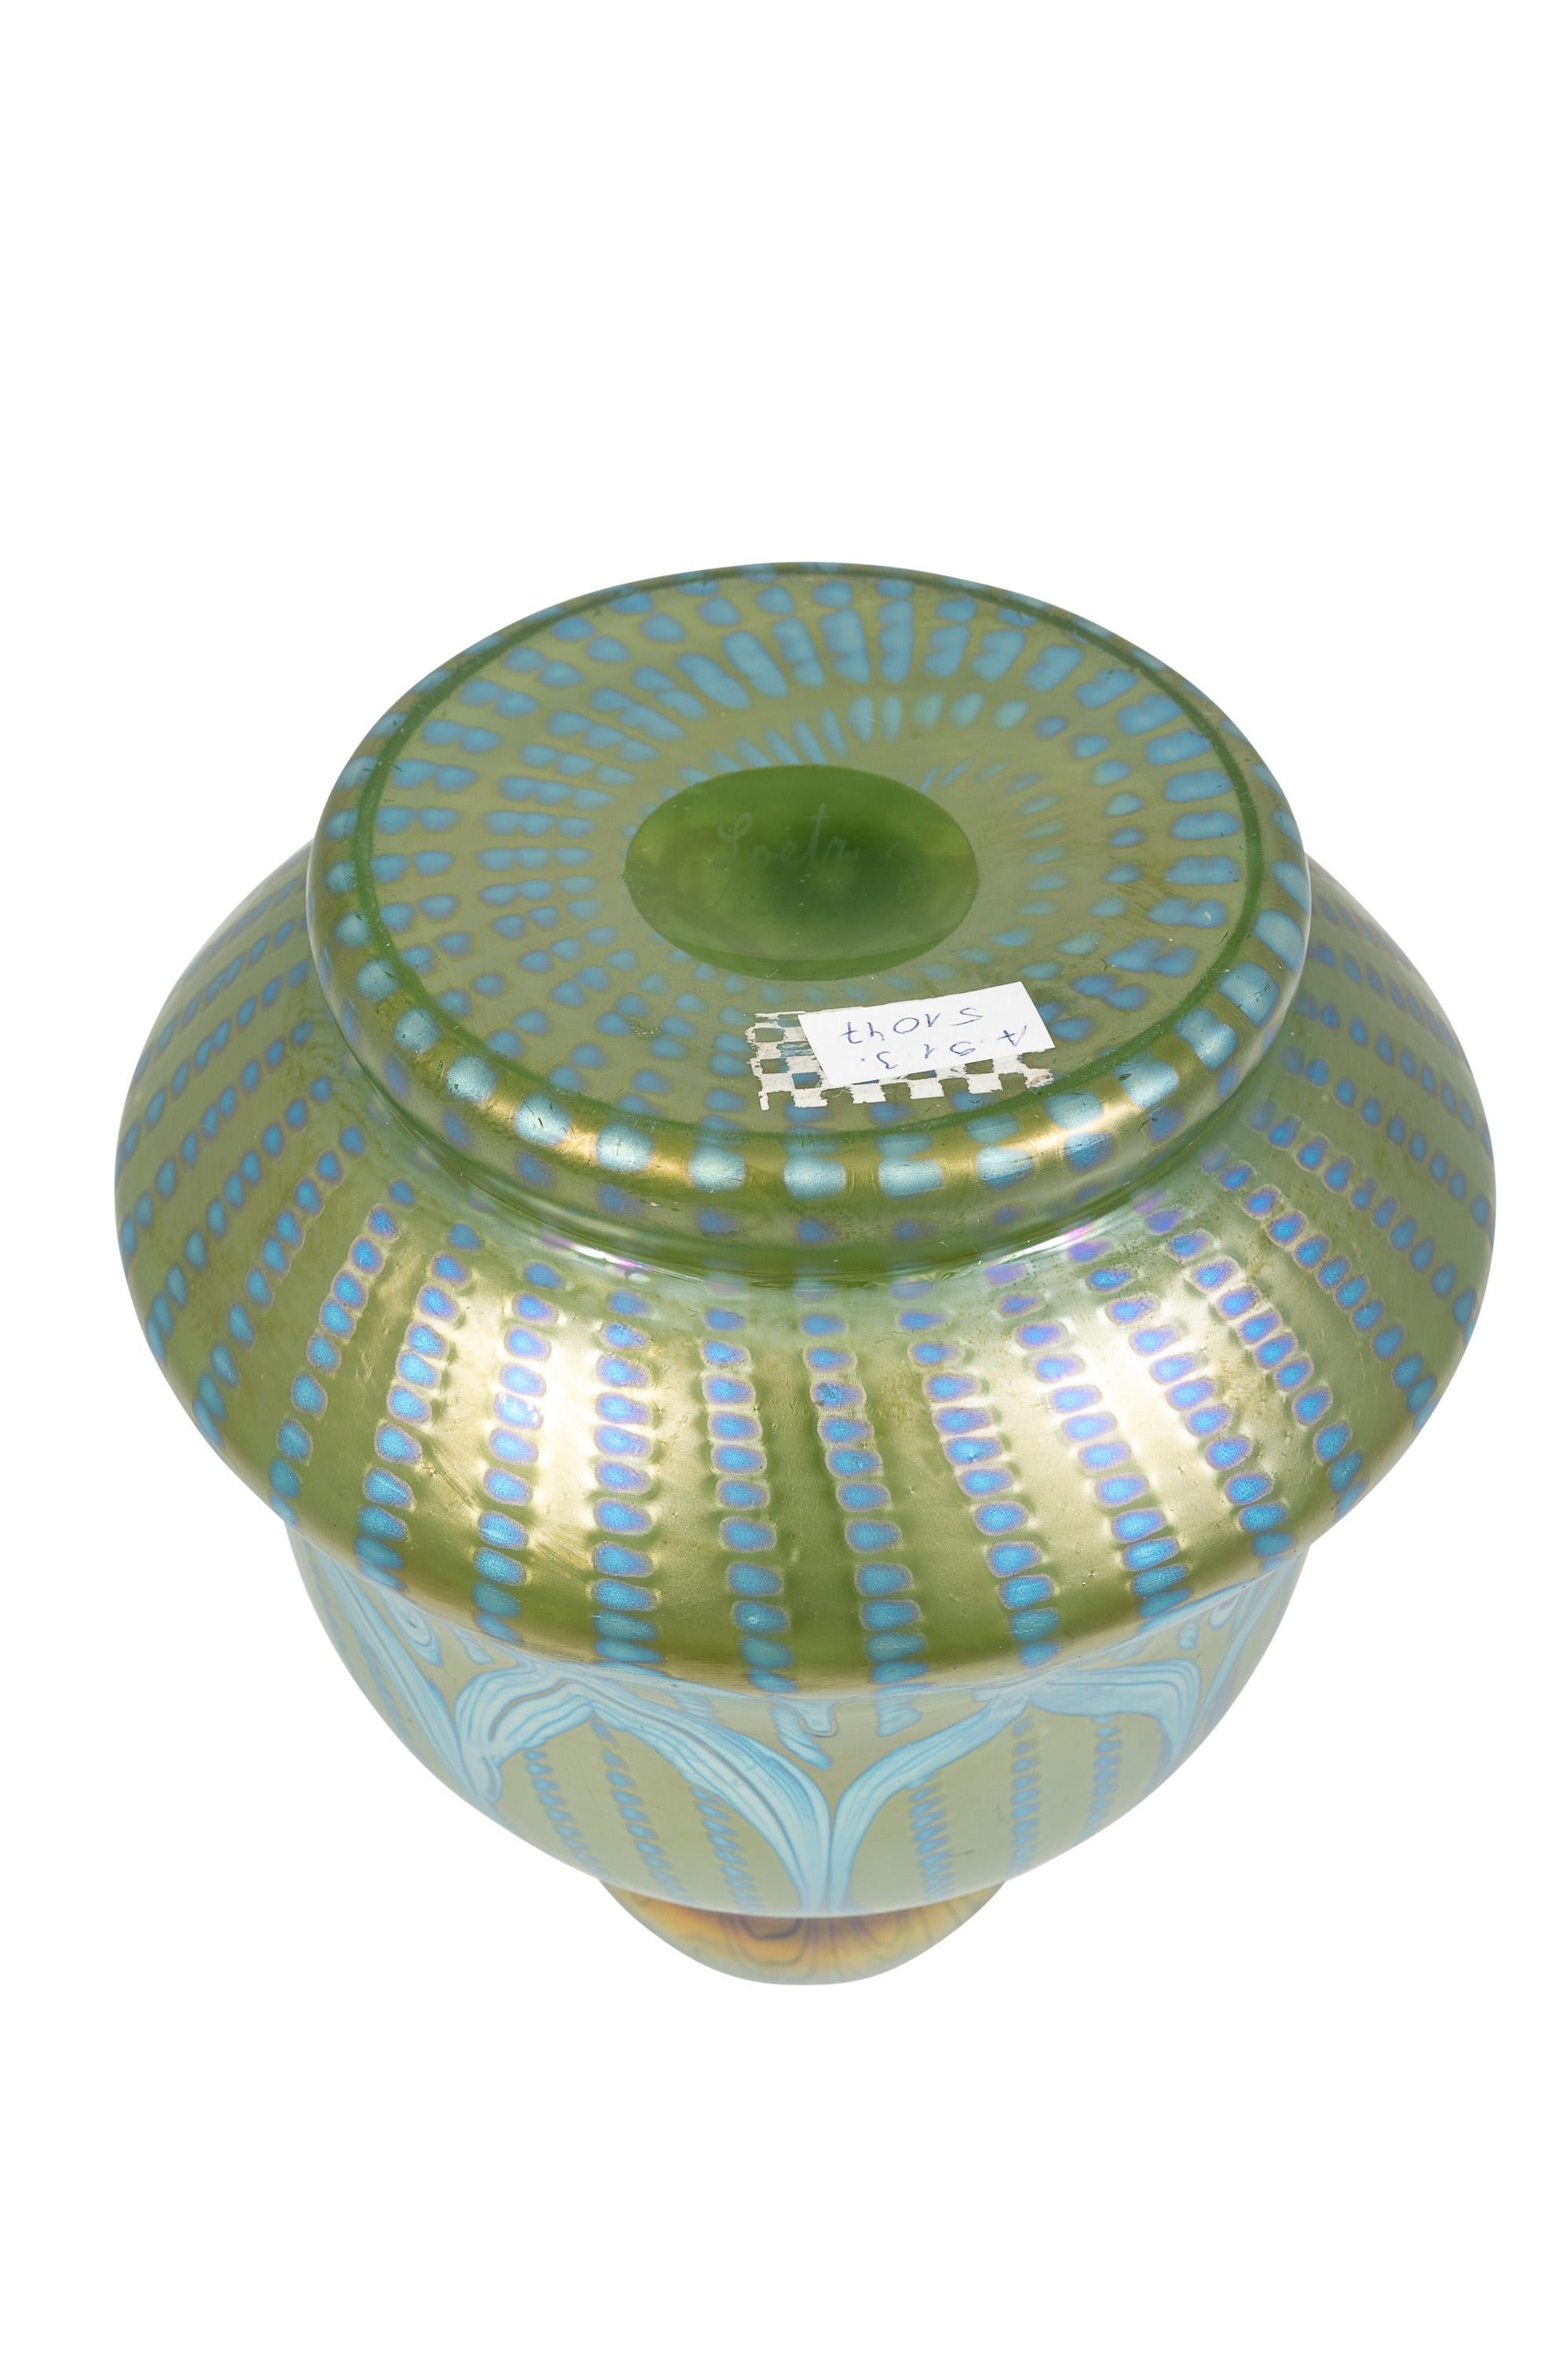 Bohemian Glass Vase Loetz circa 1900 Signed Art Nouveau Jugendstil Blue Green For Sale 1